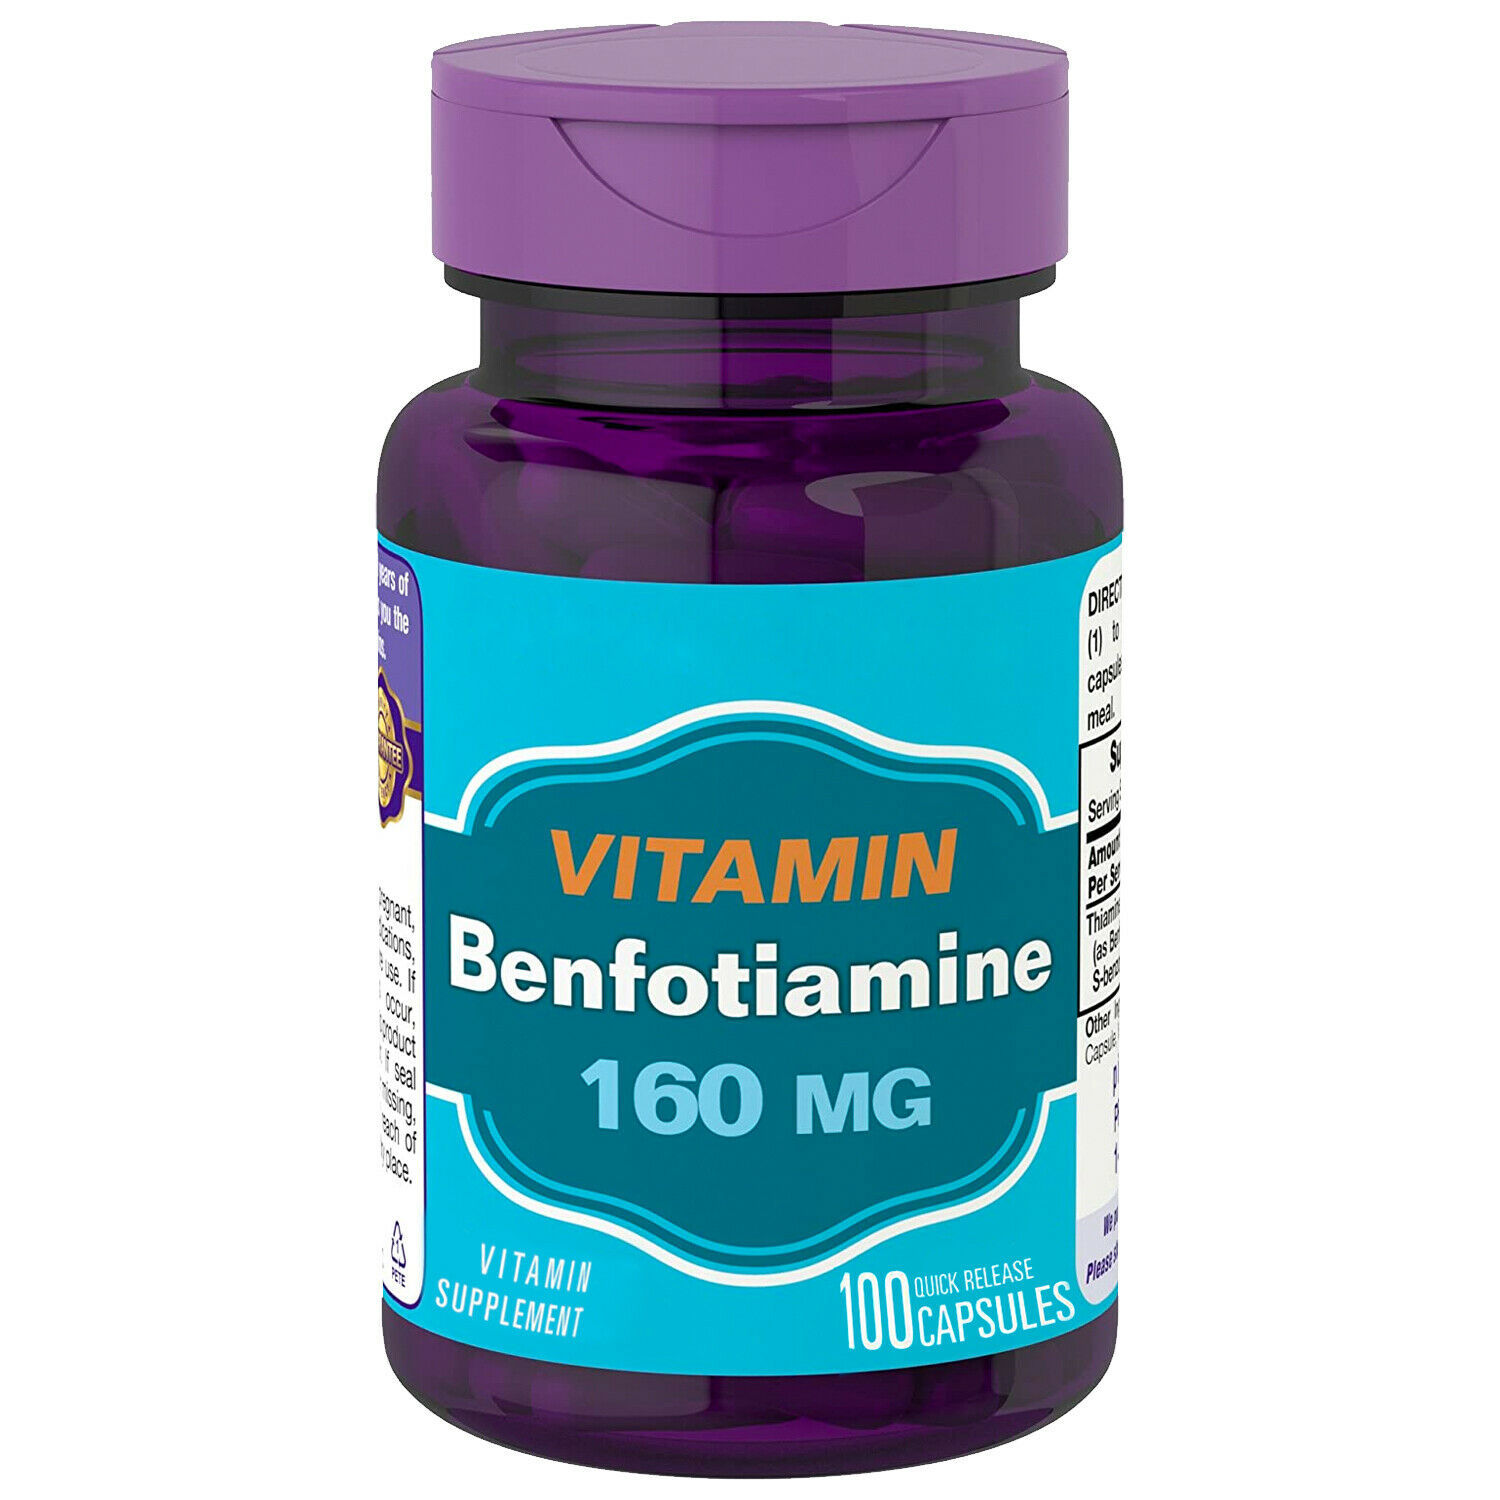 Бенфотиамин отзывы применение цена